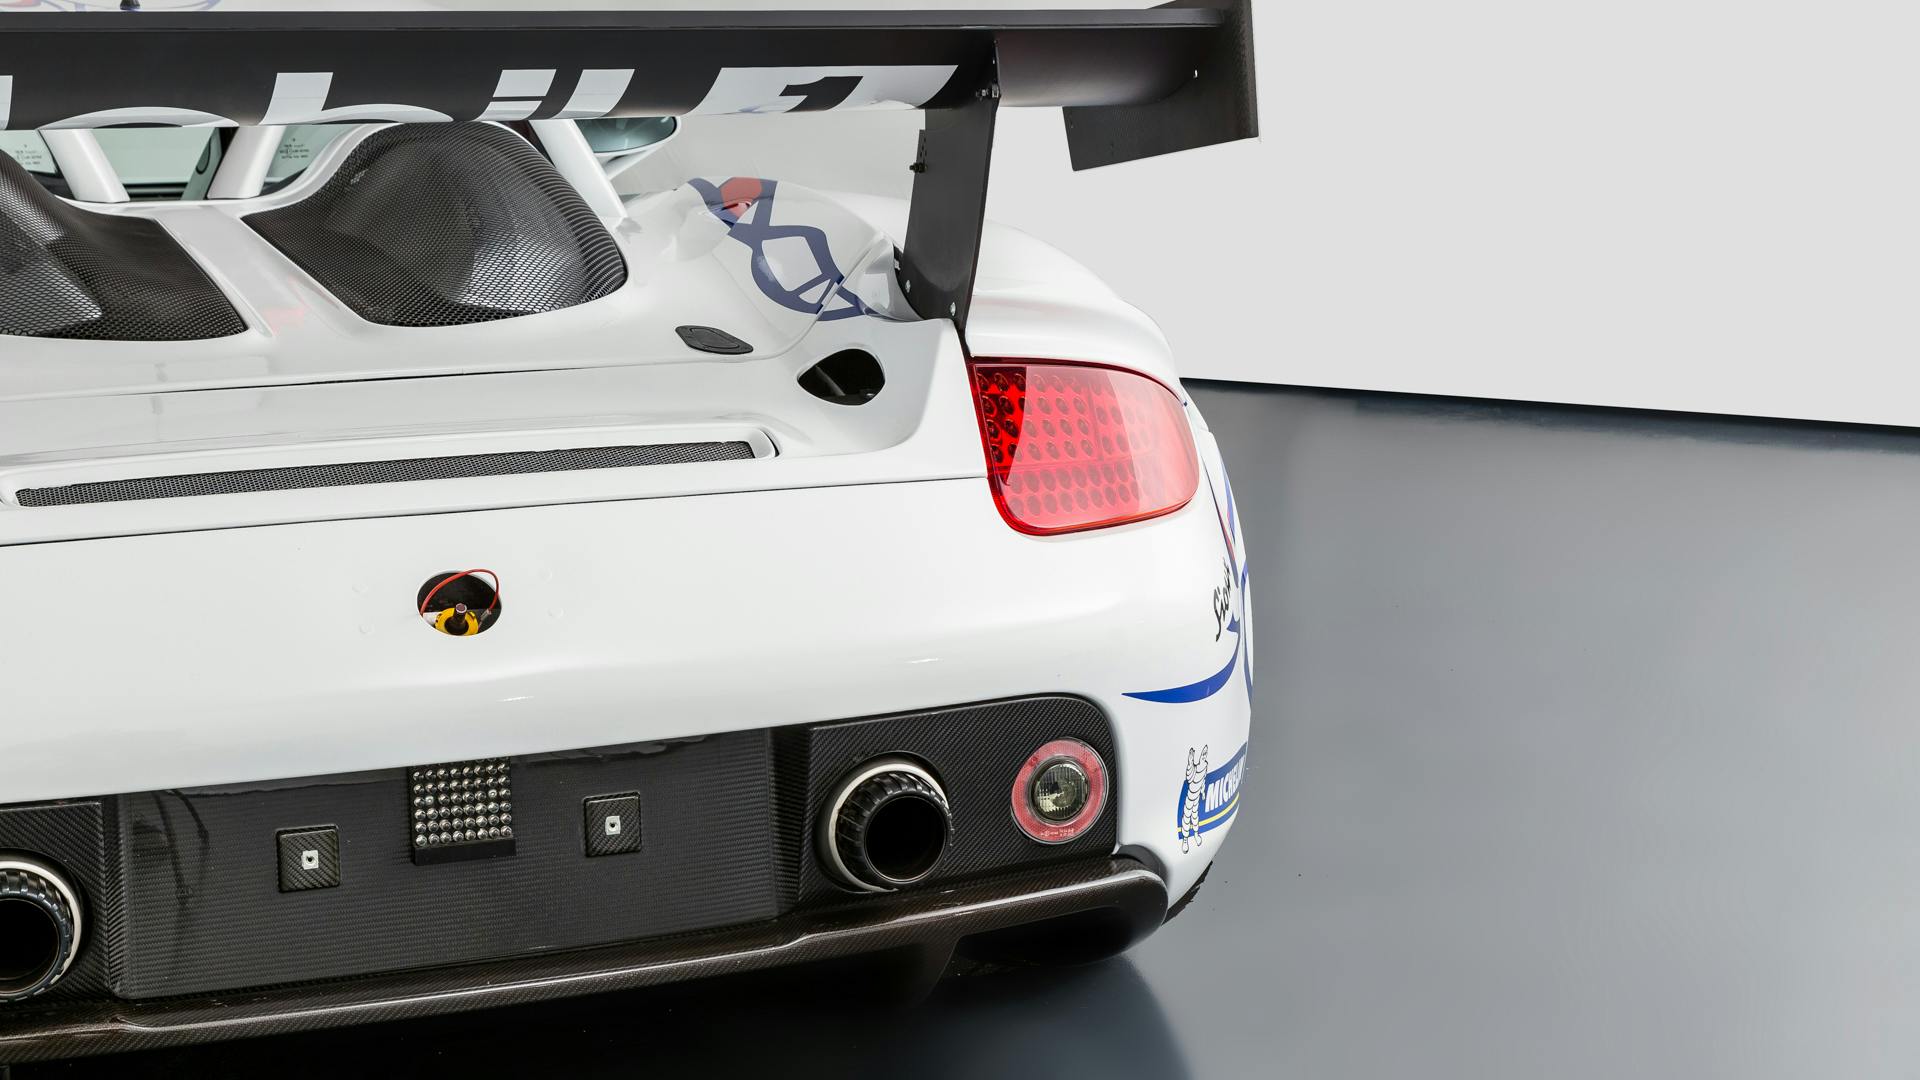 Carrera GT Racecar rear